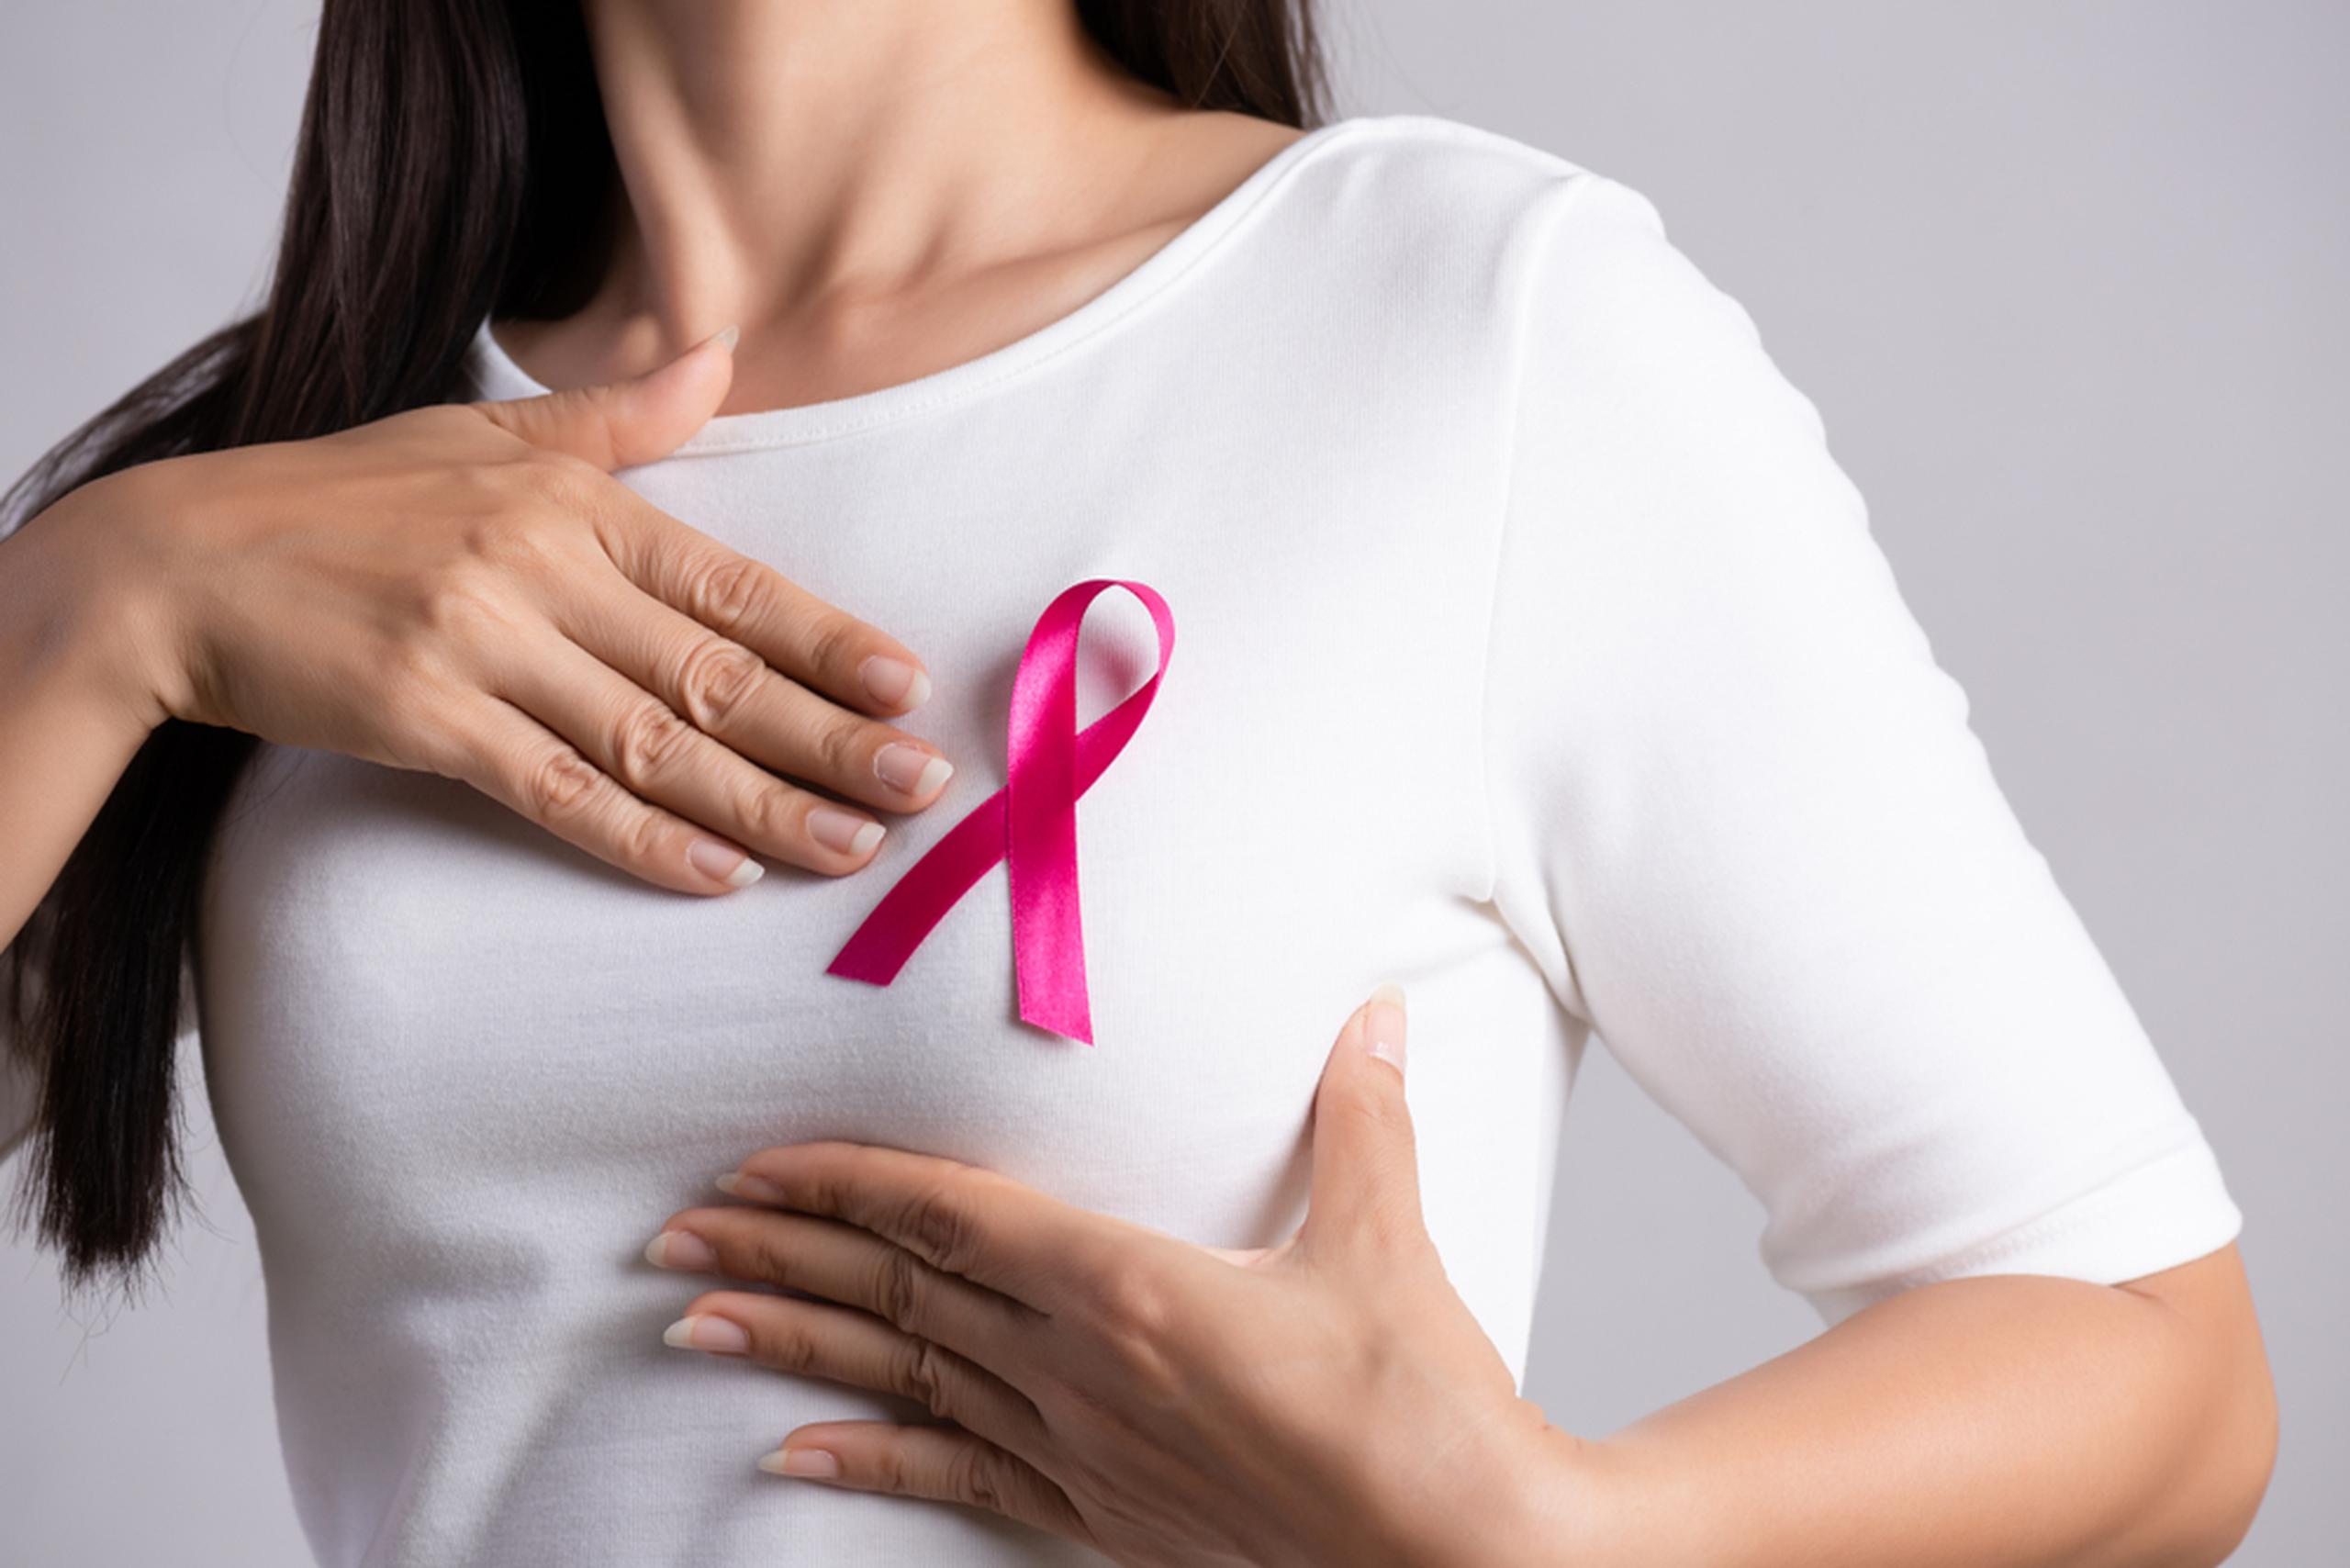 Si conoces que hay historial de cáncer de seno o factores de riesgo, conversa con tu médico para ver si recomienda hacer la mamografía antes de los 40 años.